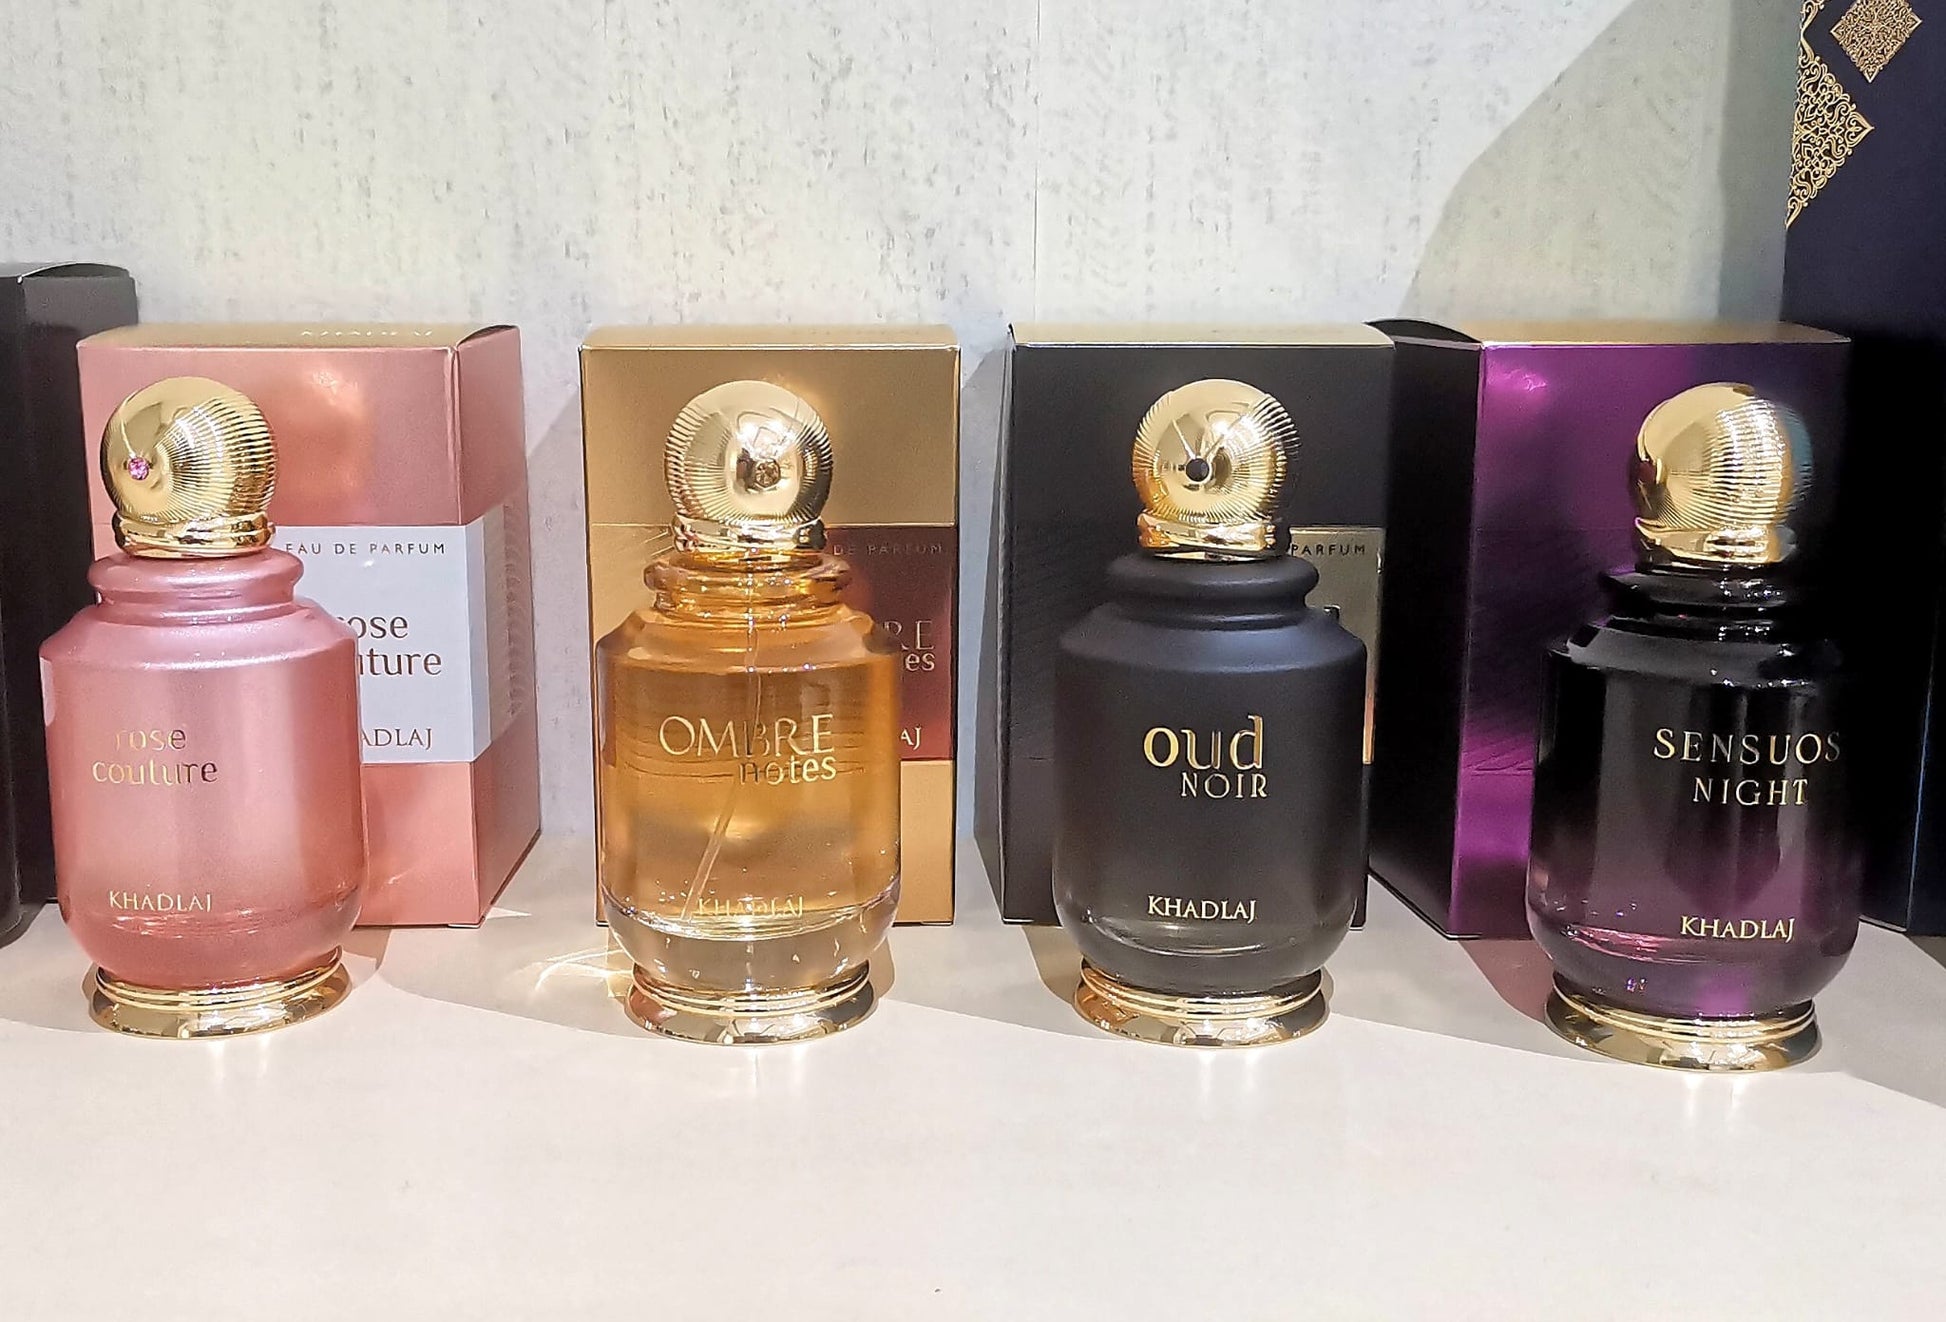 OUD NOIR Fragrance - 100ml bottle